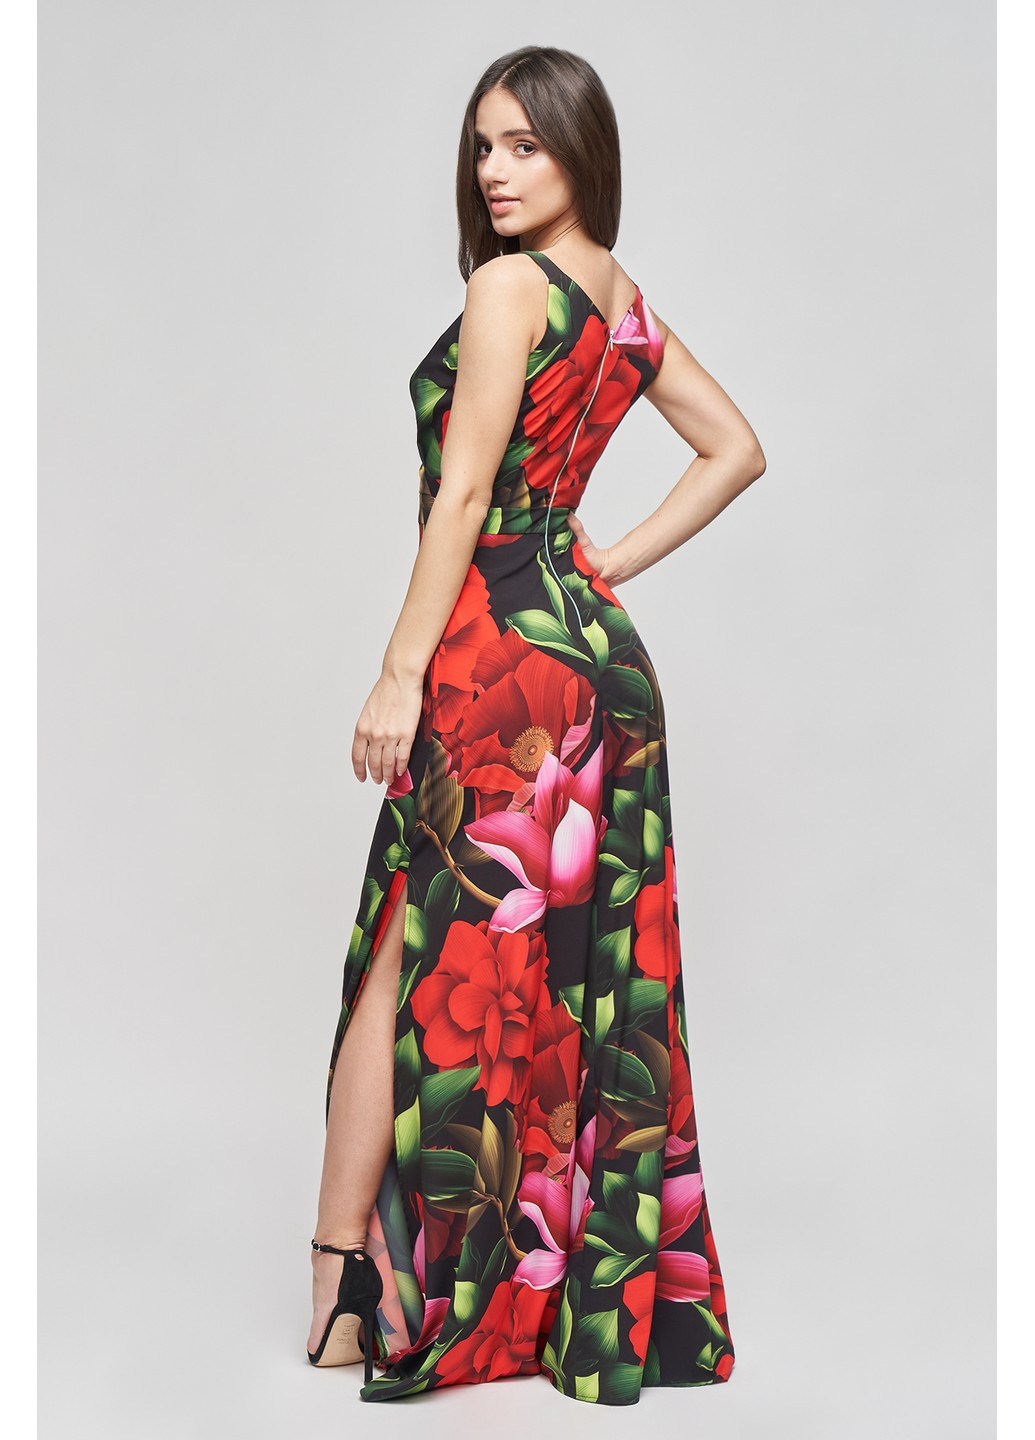 Комбинированное коктейльное платье амели на запах, с открытыми плечами, клеш BYURSE с цветочным принтом